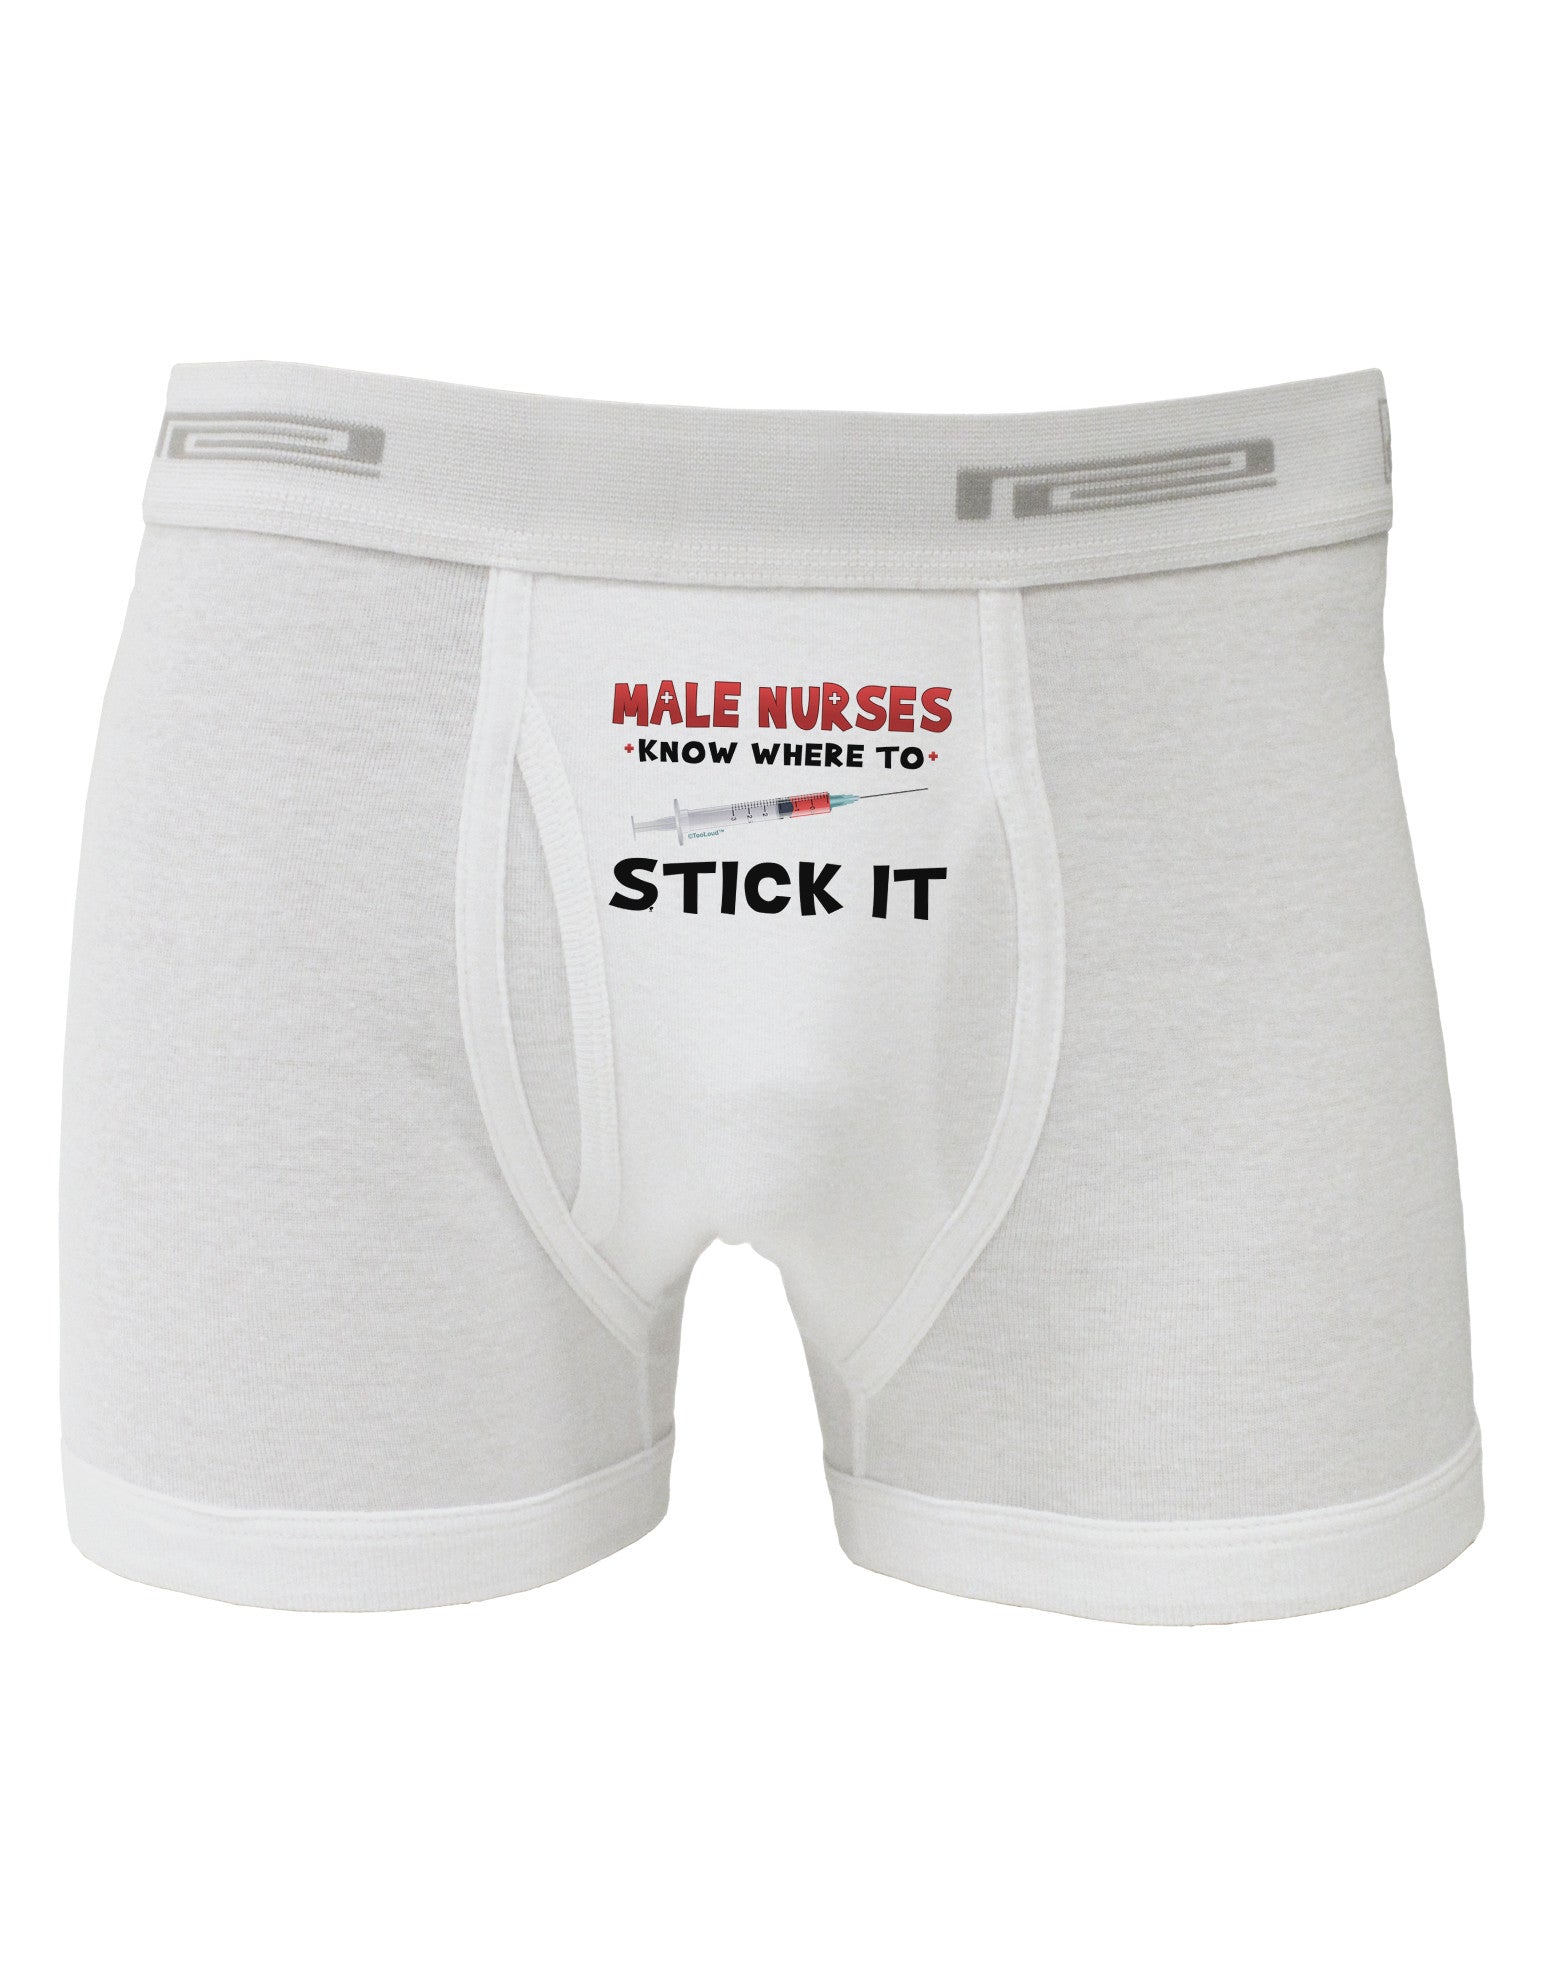 Male Nurses - Stick It Boxer Briefs